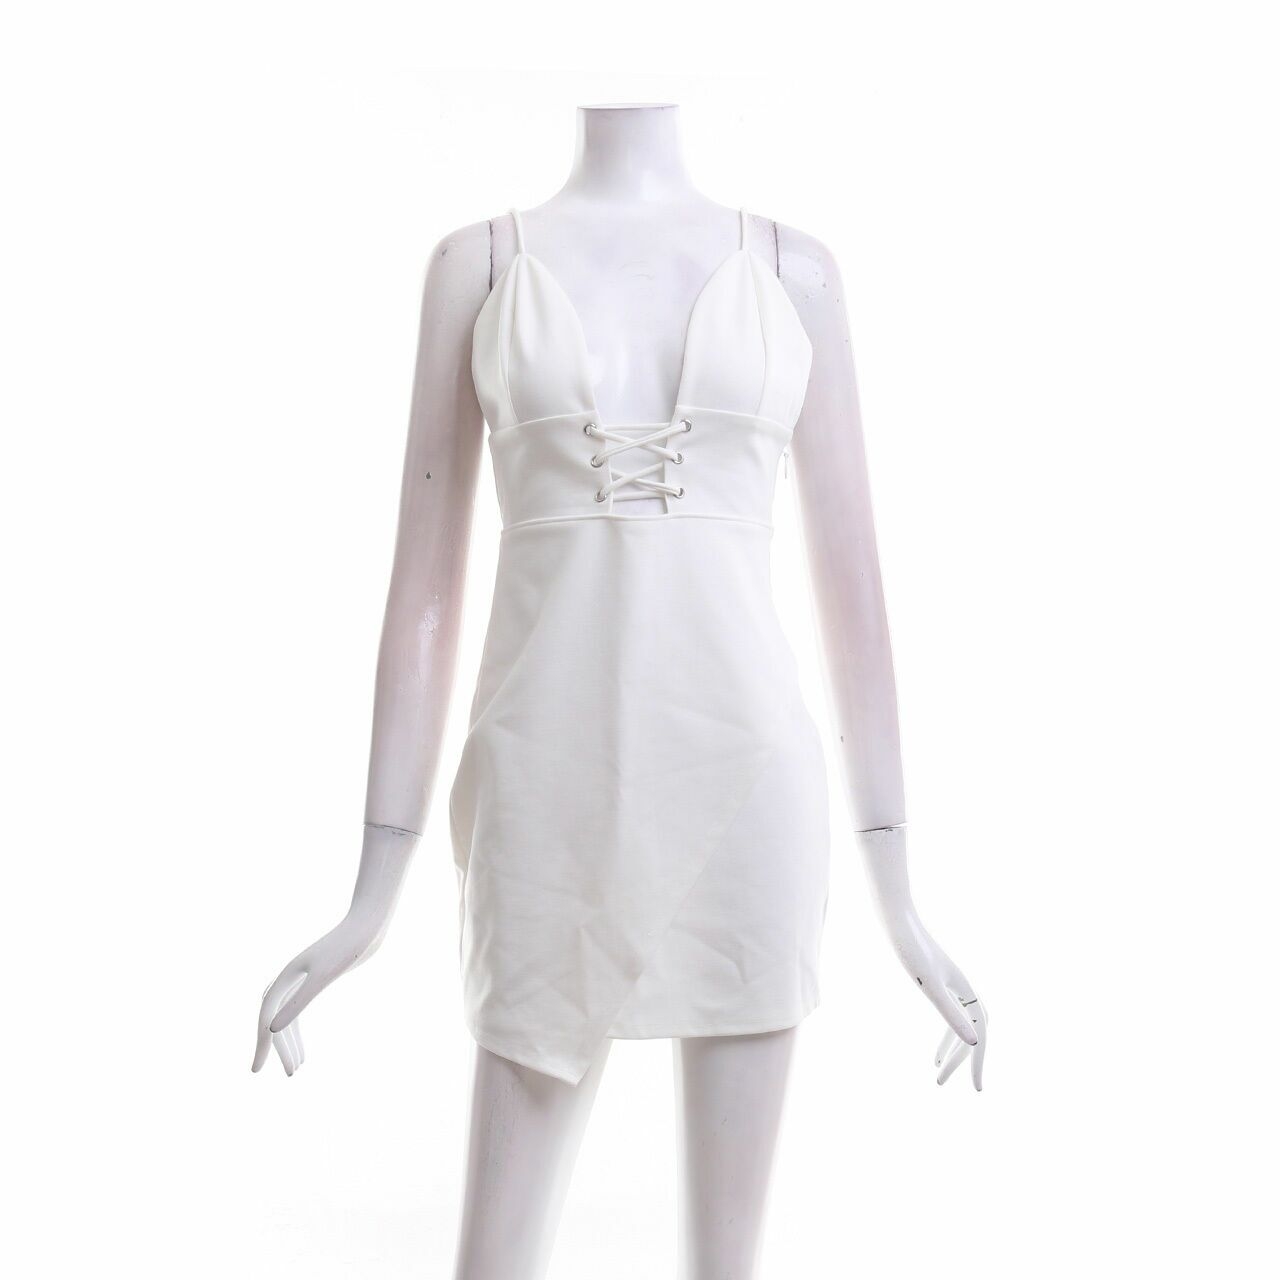 Tobi White Mini Dress